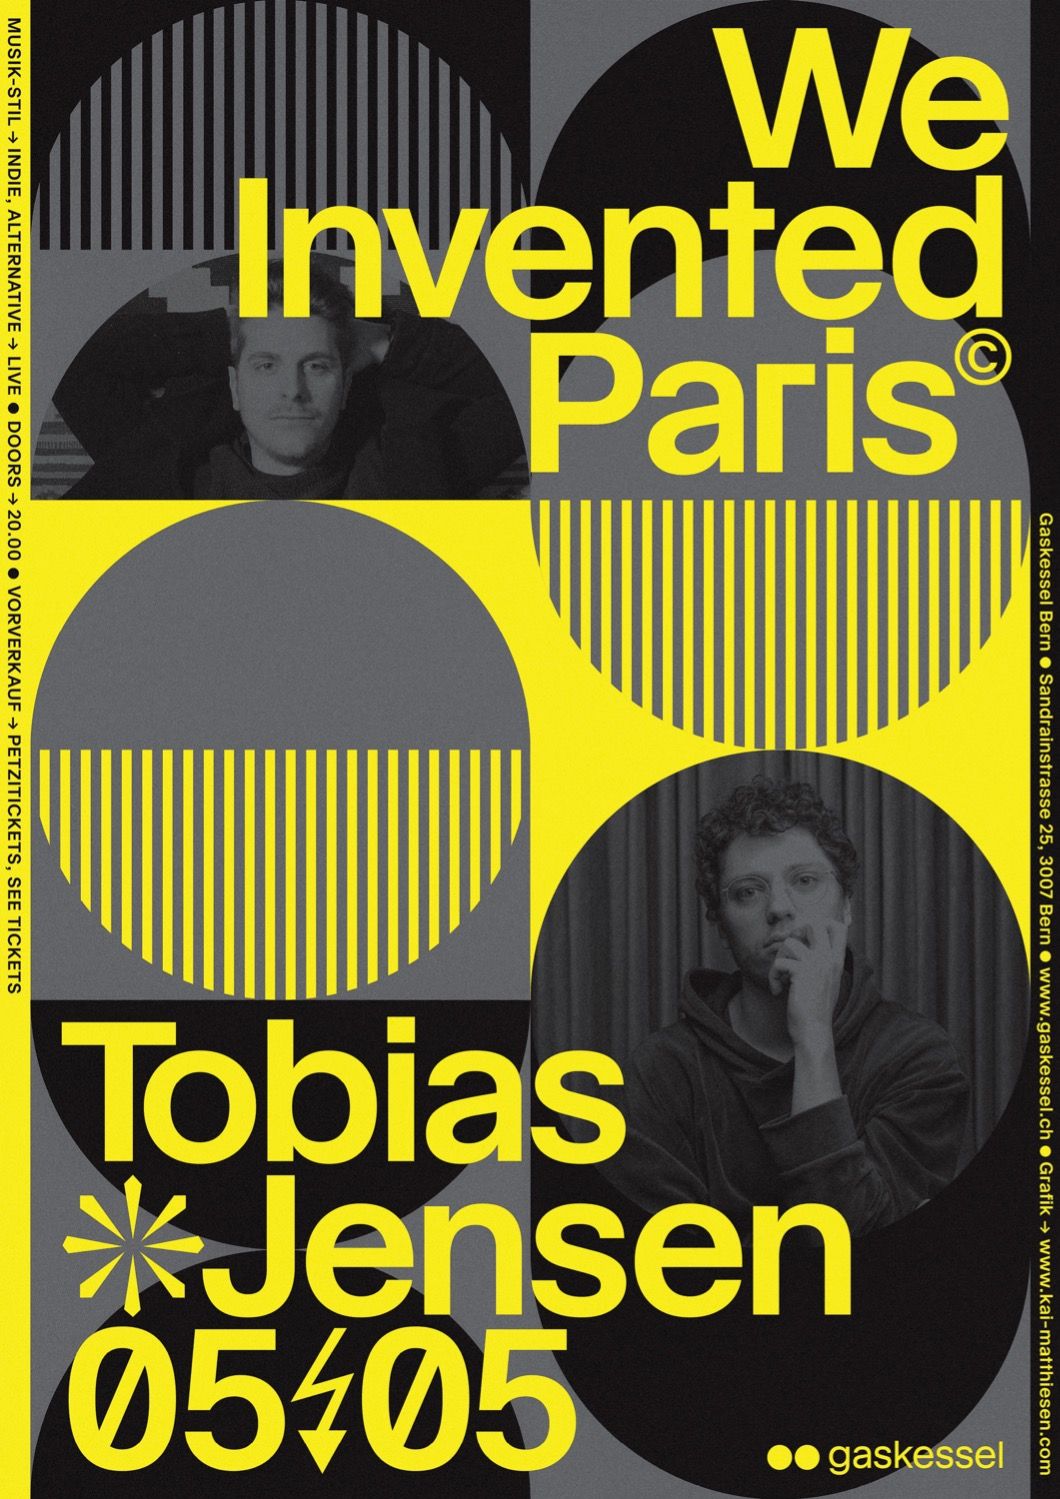 Poster für We Invented Paris , gestaltet von Kai Matthiesen 